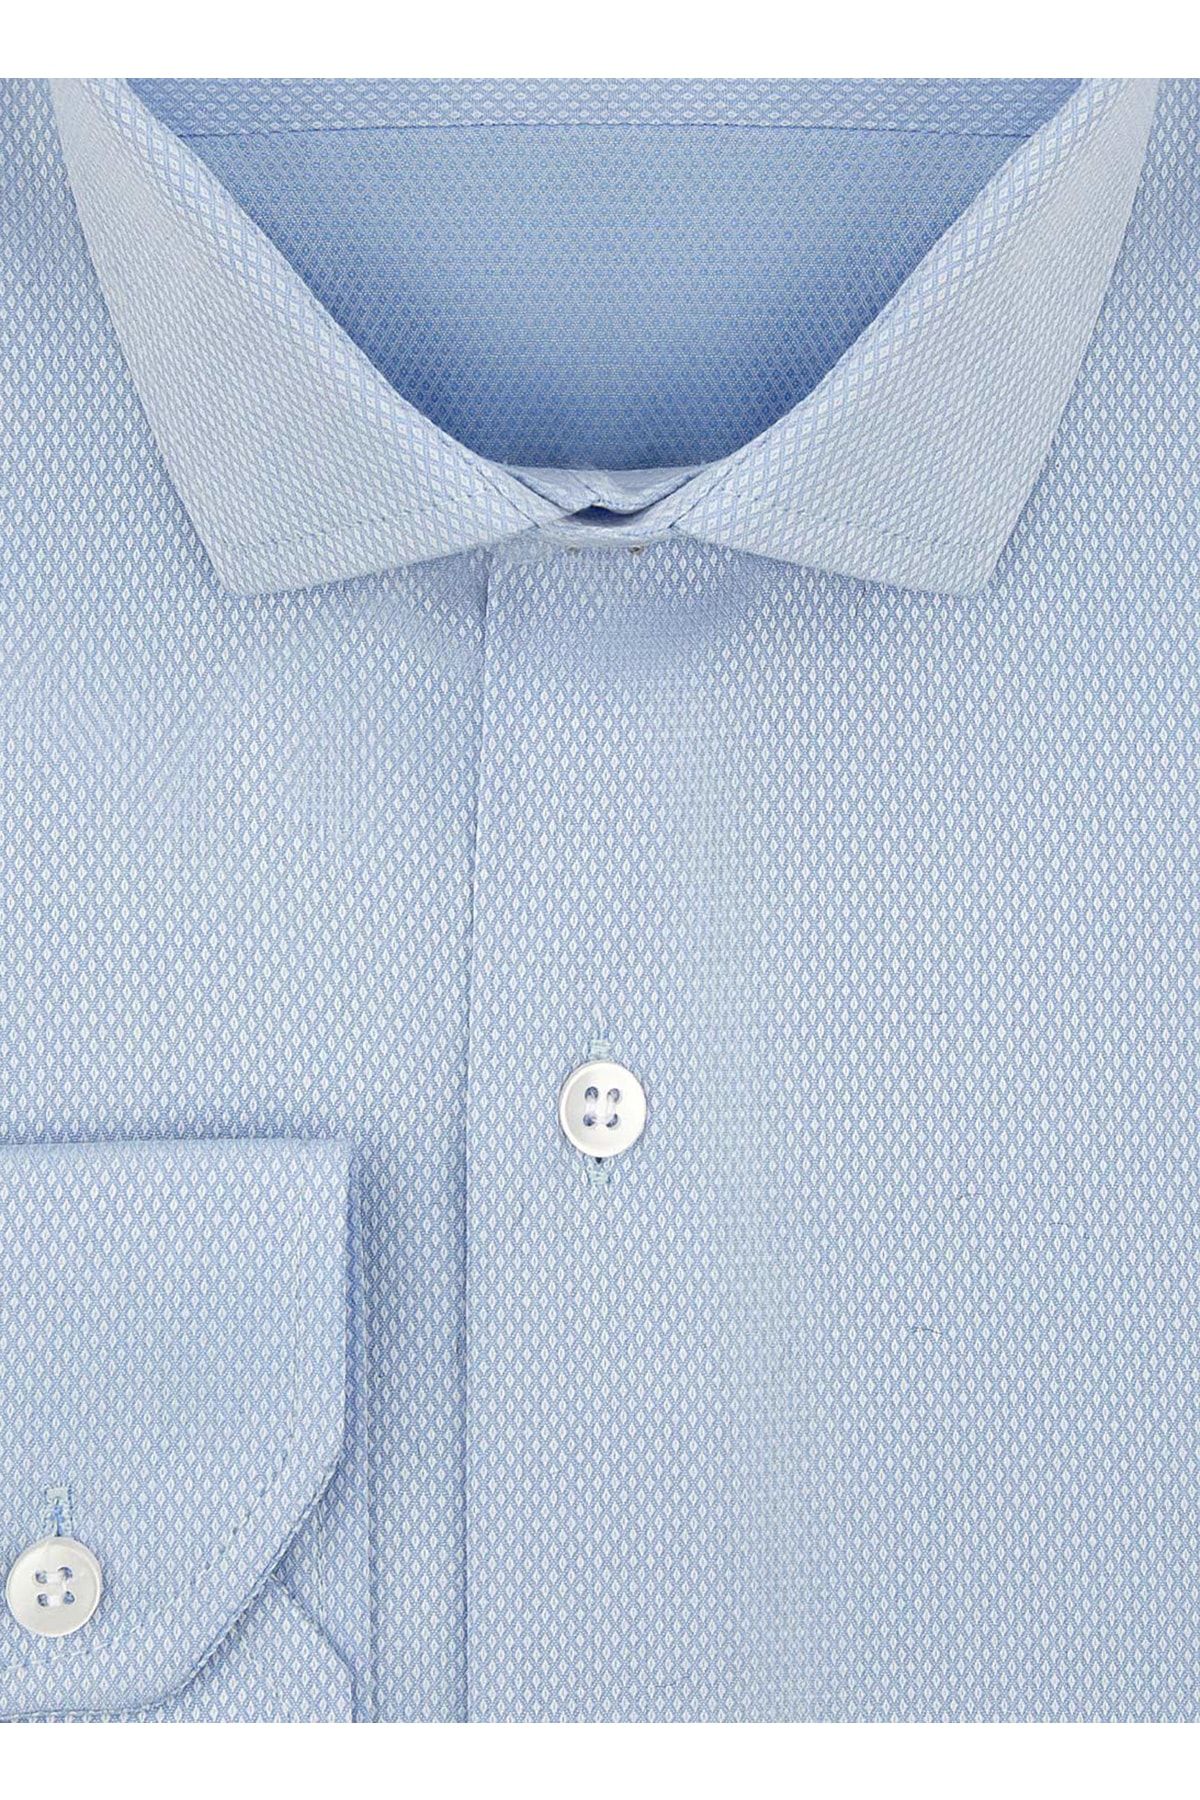 SÜVARİ Gm2024700309 Klasik Yaka Slim Fit Armürlü Mavi Erkek Gömlek